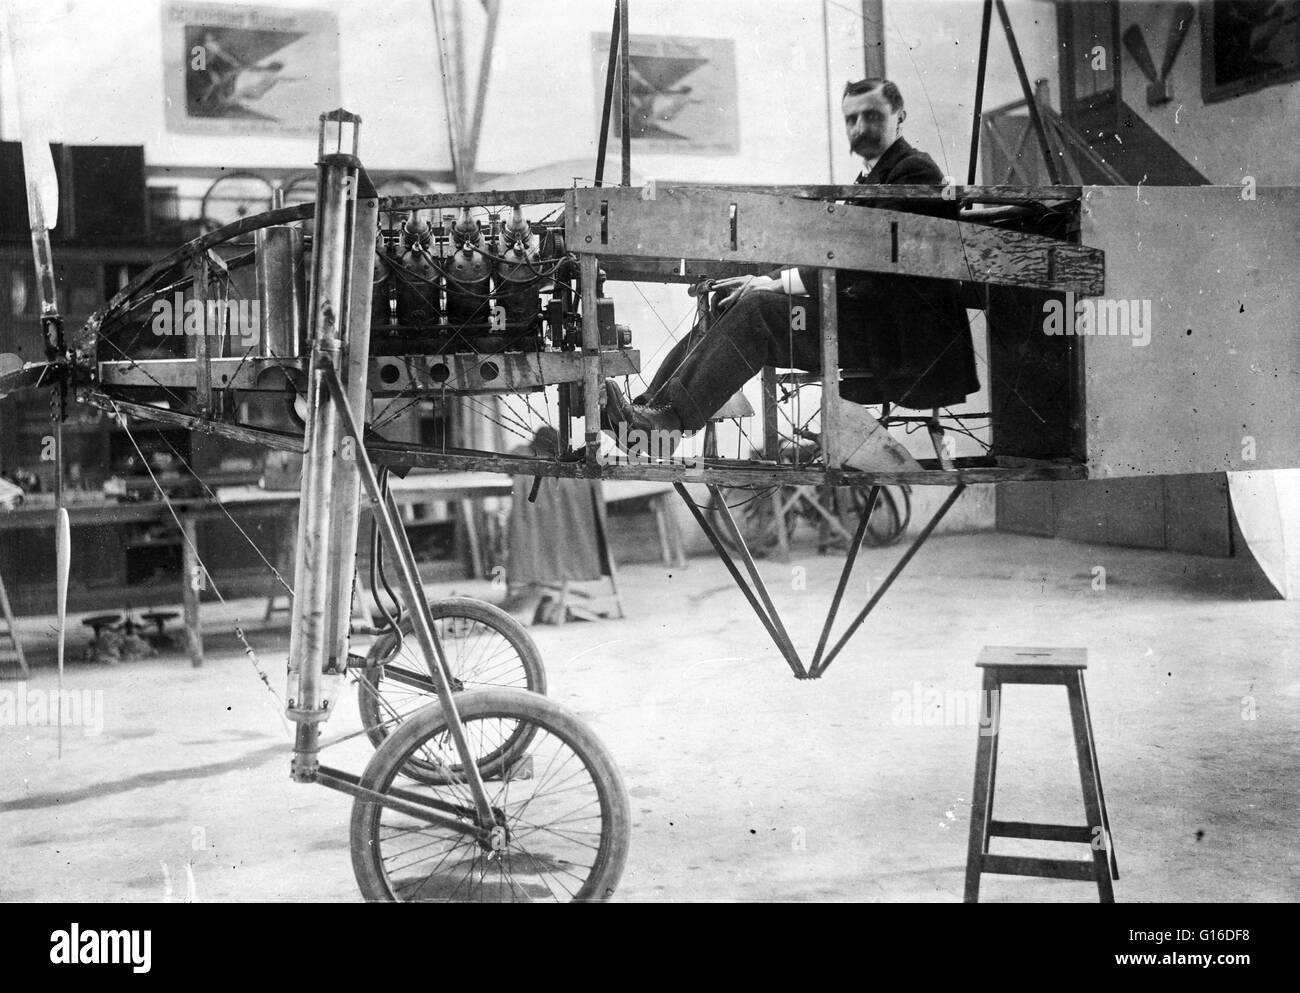 Blériot al timone del suo monoplan, arredate con un motore automatico di 50 cavalli. Louis Charles Joseph Blériot (Luglio 1, 1872 - 1 agosto 1936) era un aviatore francese, inventore e ingegnere. Egli ha sviluppato il primo proiettore pratico per auto e establi Foto Stock